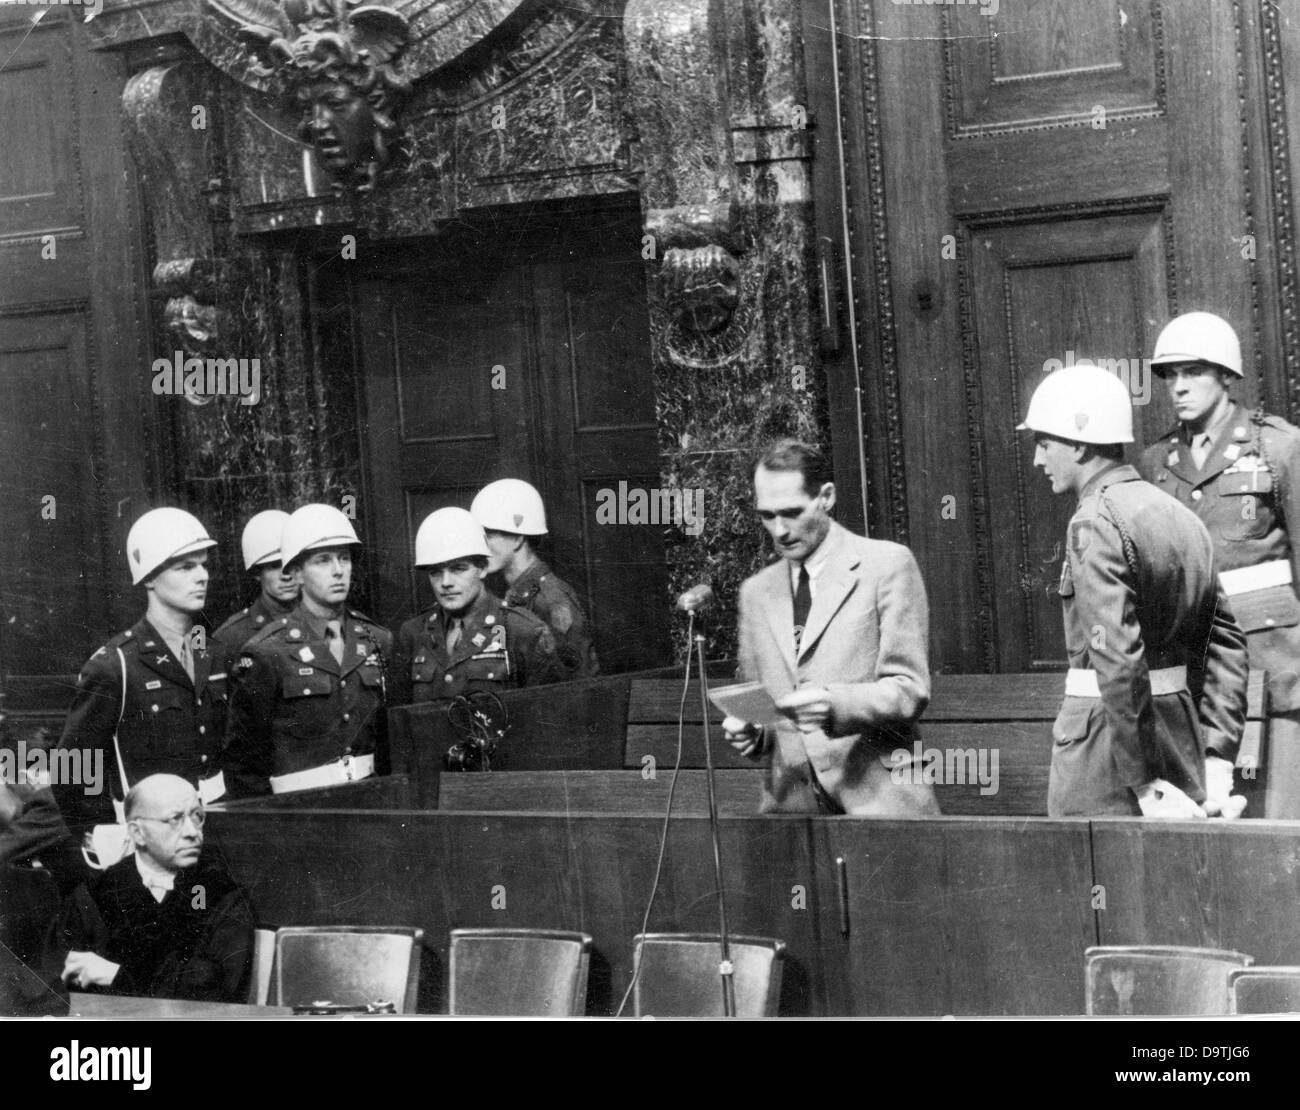 Rudolf Hess, einer der Hauptangeklagten als Kriegsverbrecher des NS-Regimes, liest laut einem Papier an der internationalen militärischen Gerichtshof in Nürnberg 1946.    Foto: Jewgeni Chaldei Stockfoto